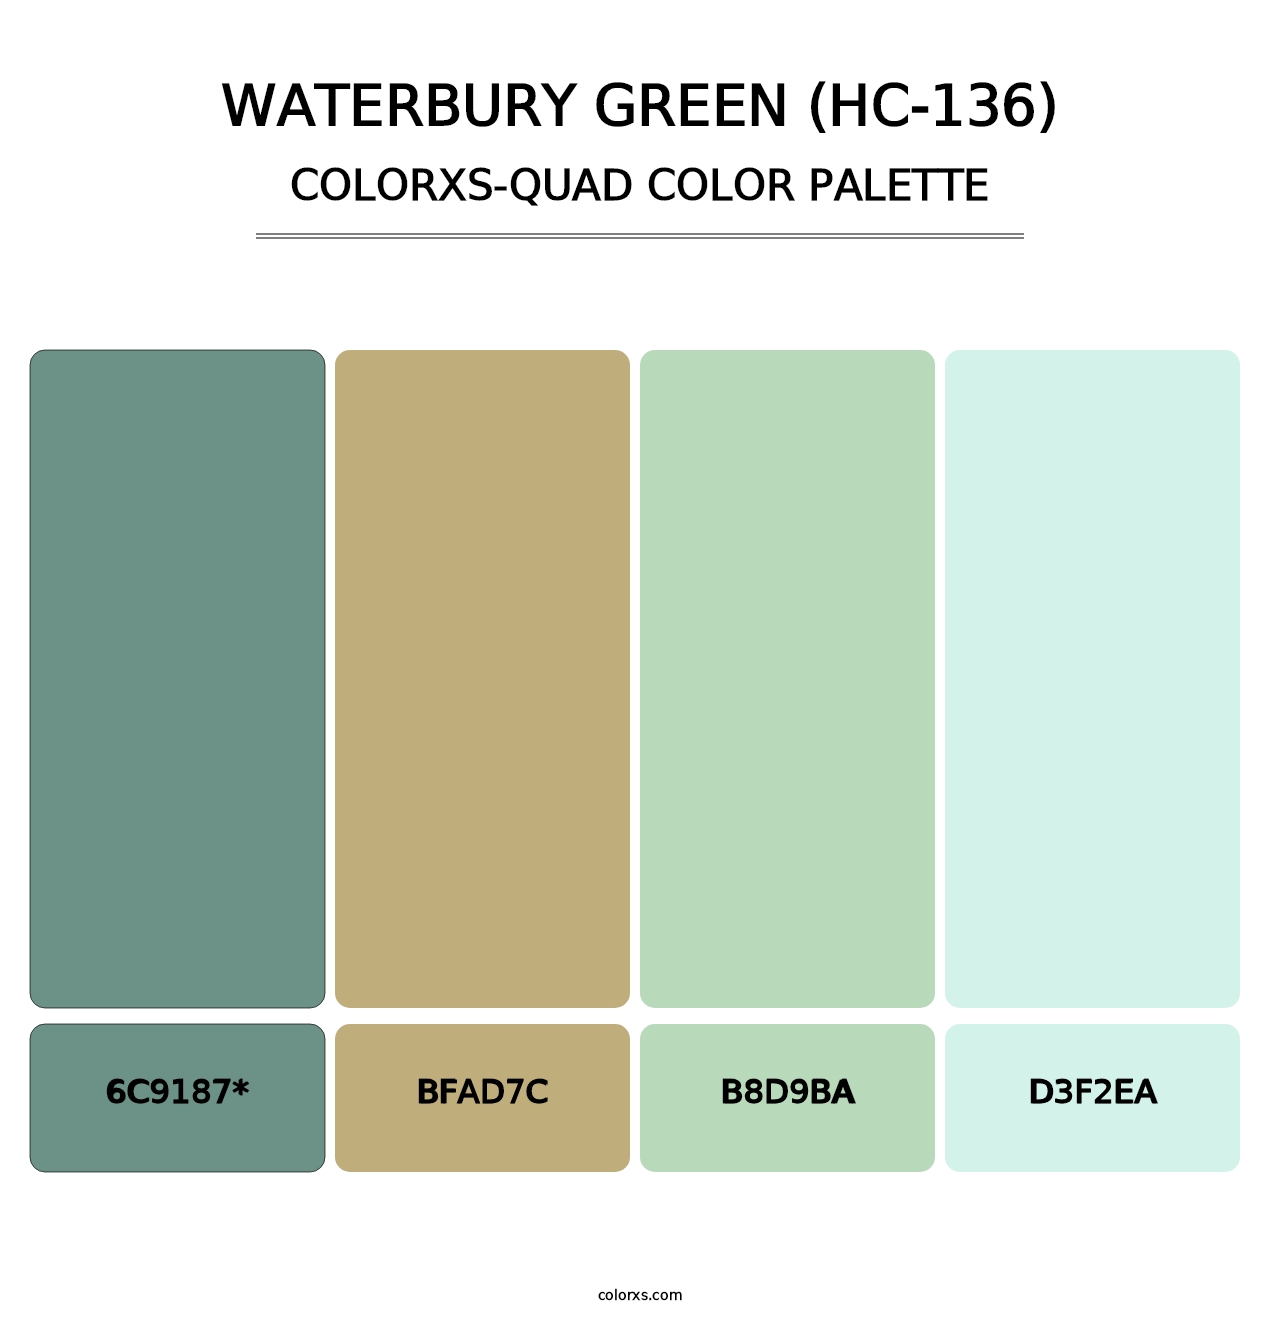 Waterbury Green (HC-136) - Colorxs Quad Palette